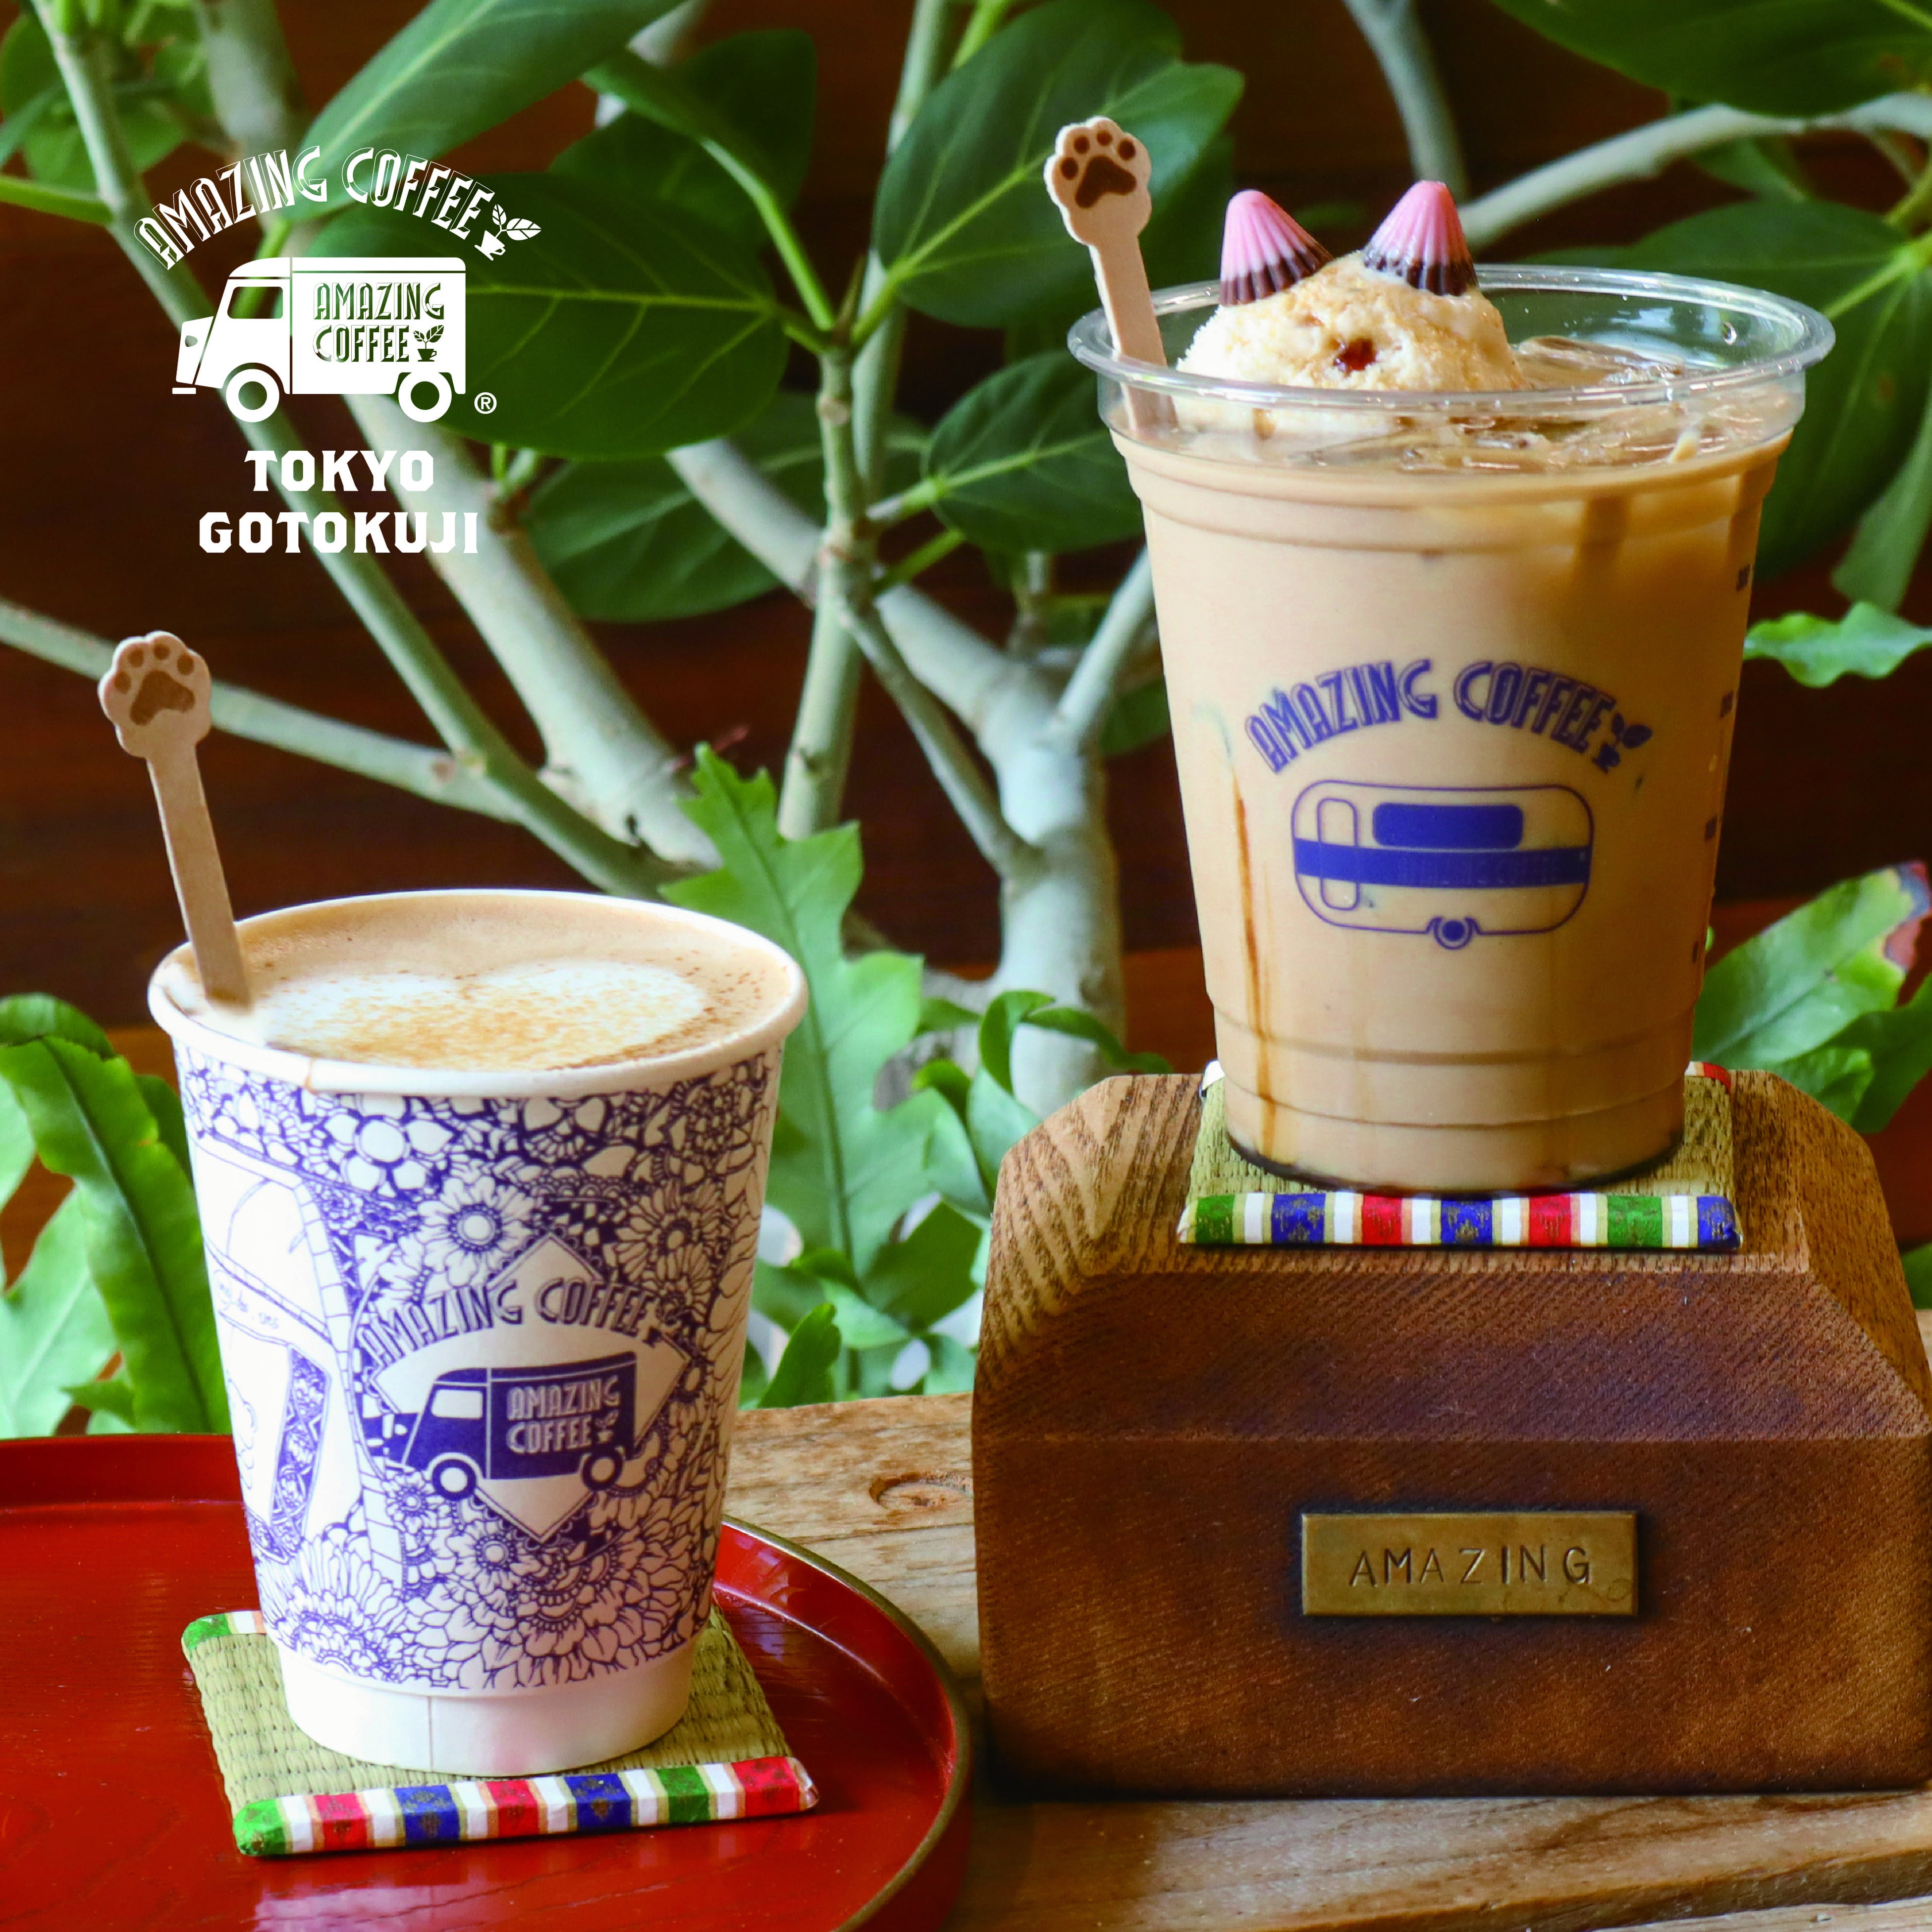 【2024年7月11日(木) GRAND OPEN！】『AMAZING COFFEE TOKYO GOTOKUJI』 店舗情報・販売商品ラインナップ発表！